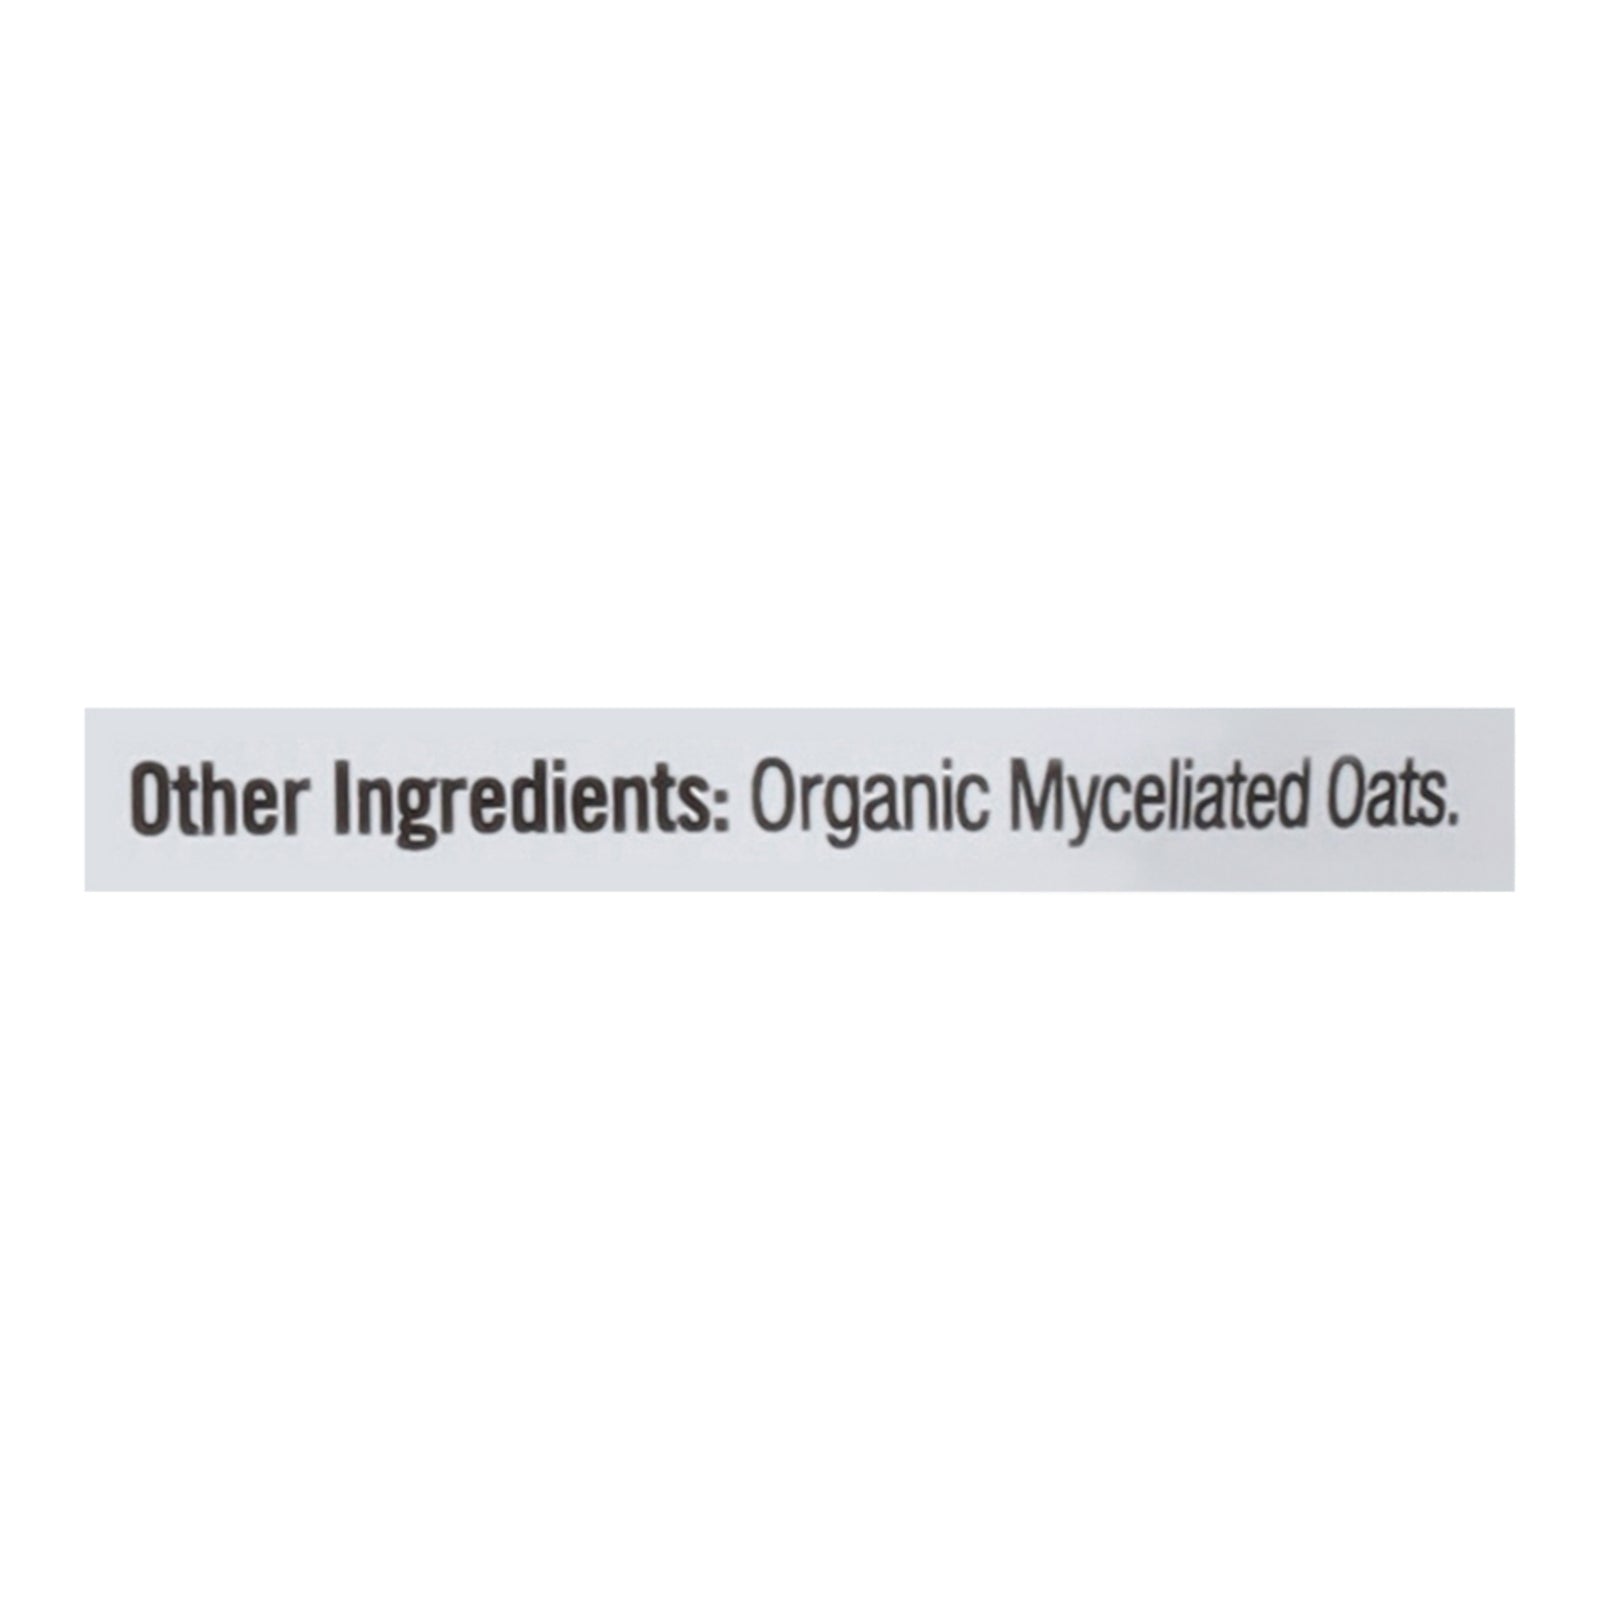 Om - Cordyceps Organic Powder 200grm - 1 Each -7.05 Oz